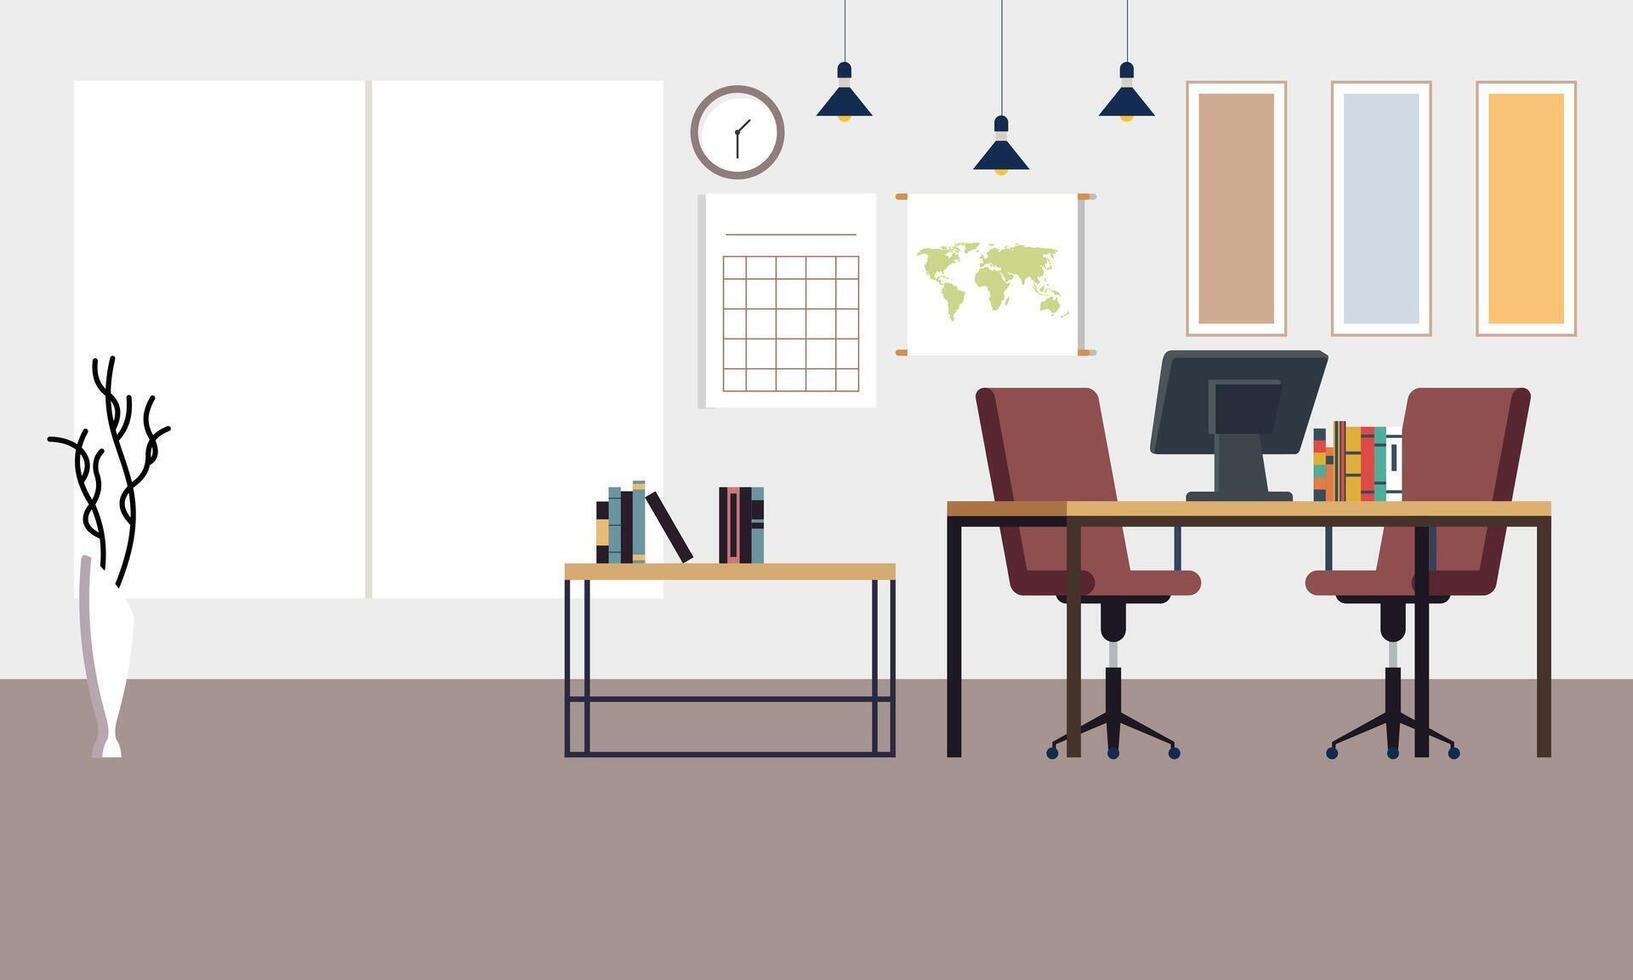 modern Coworking Bereich Büro Innere Illustration vektor